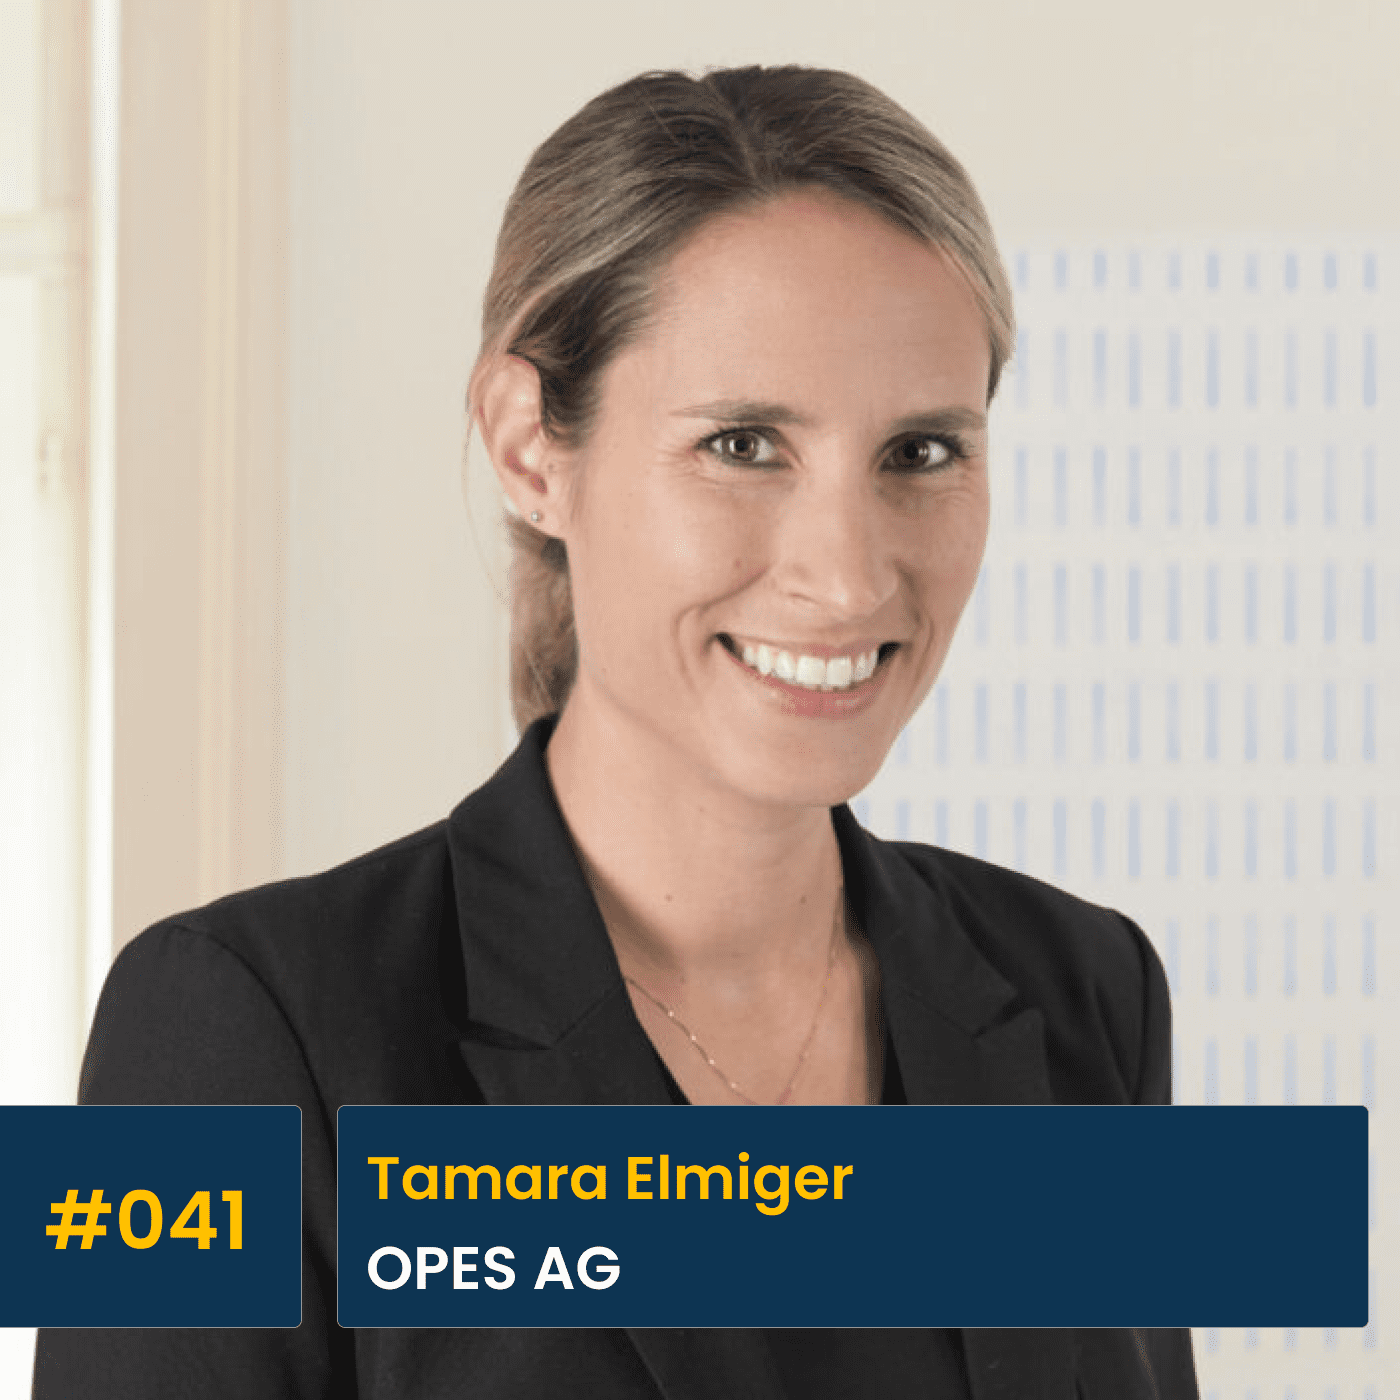 #041 Tamara Elmiger, OPES AG